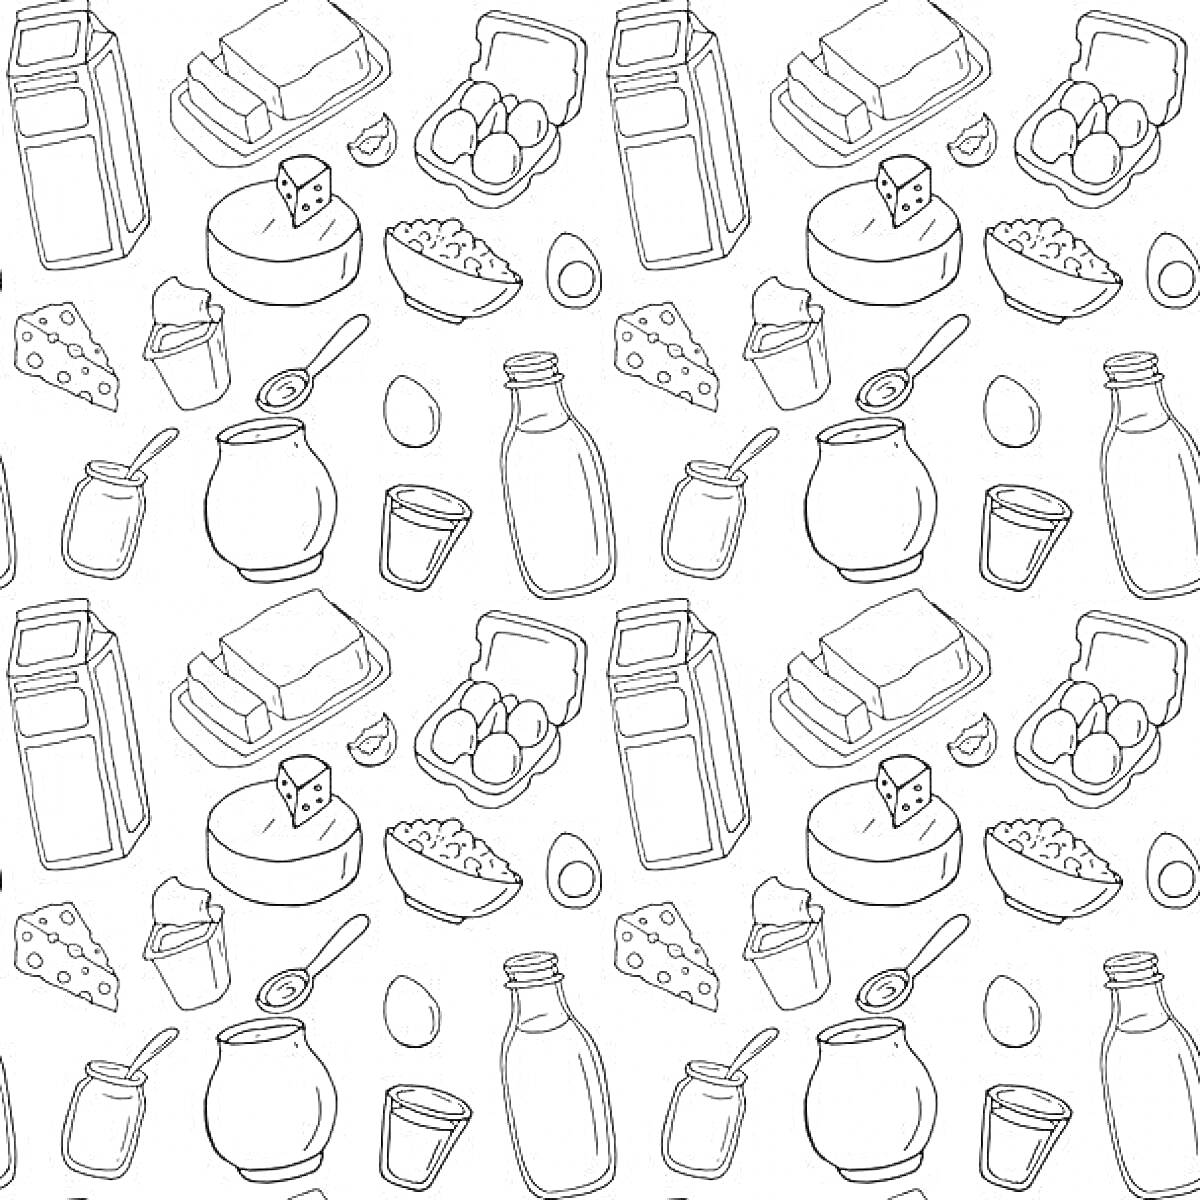 Раскраска Молочные продукты и яйца - коробка молока, кефир или йогурт в банке, стакан молока, кусочки сыра, упаковка яиц, масло в упаковке, стакан с творогом, бутылка молока